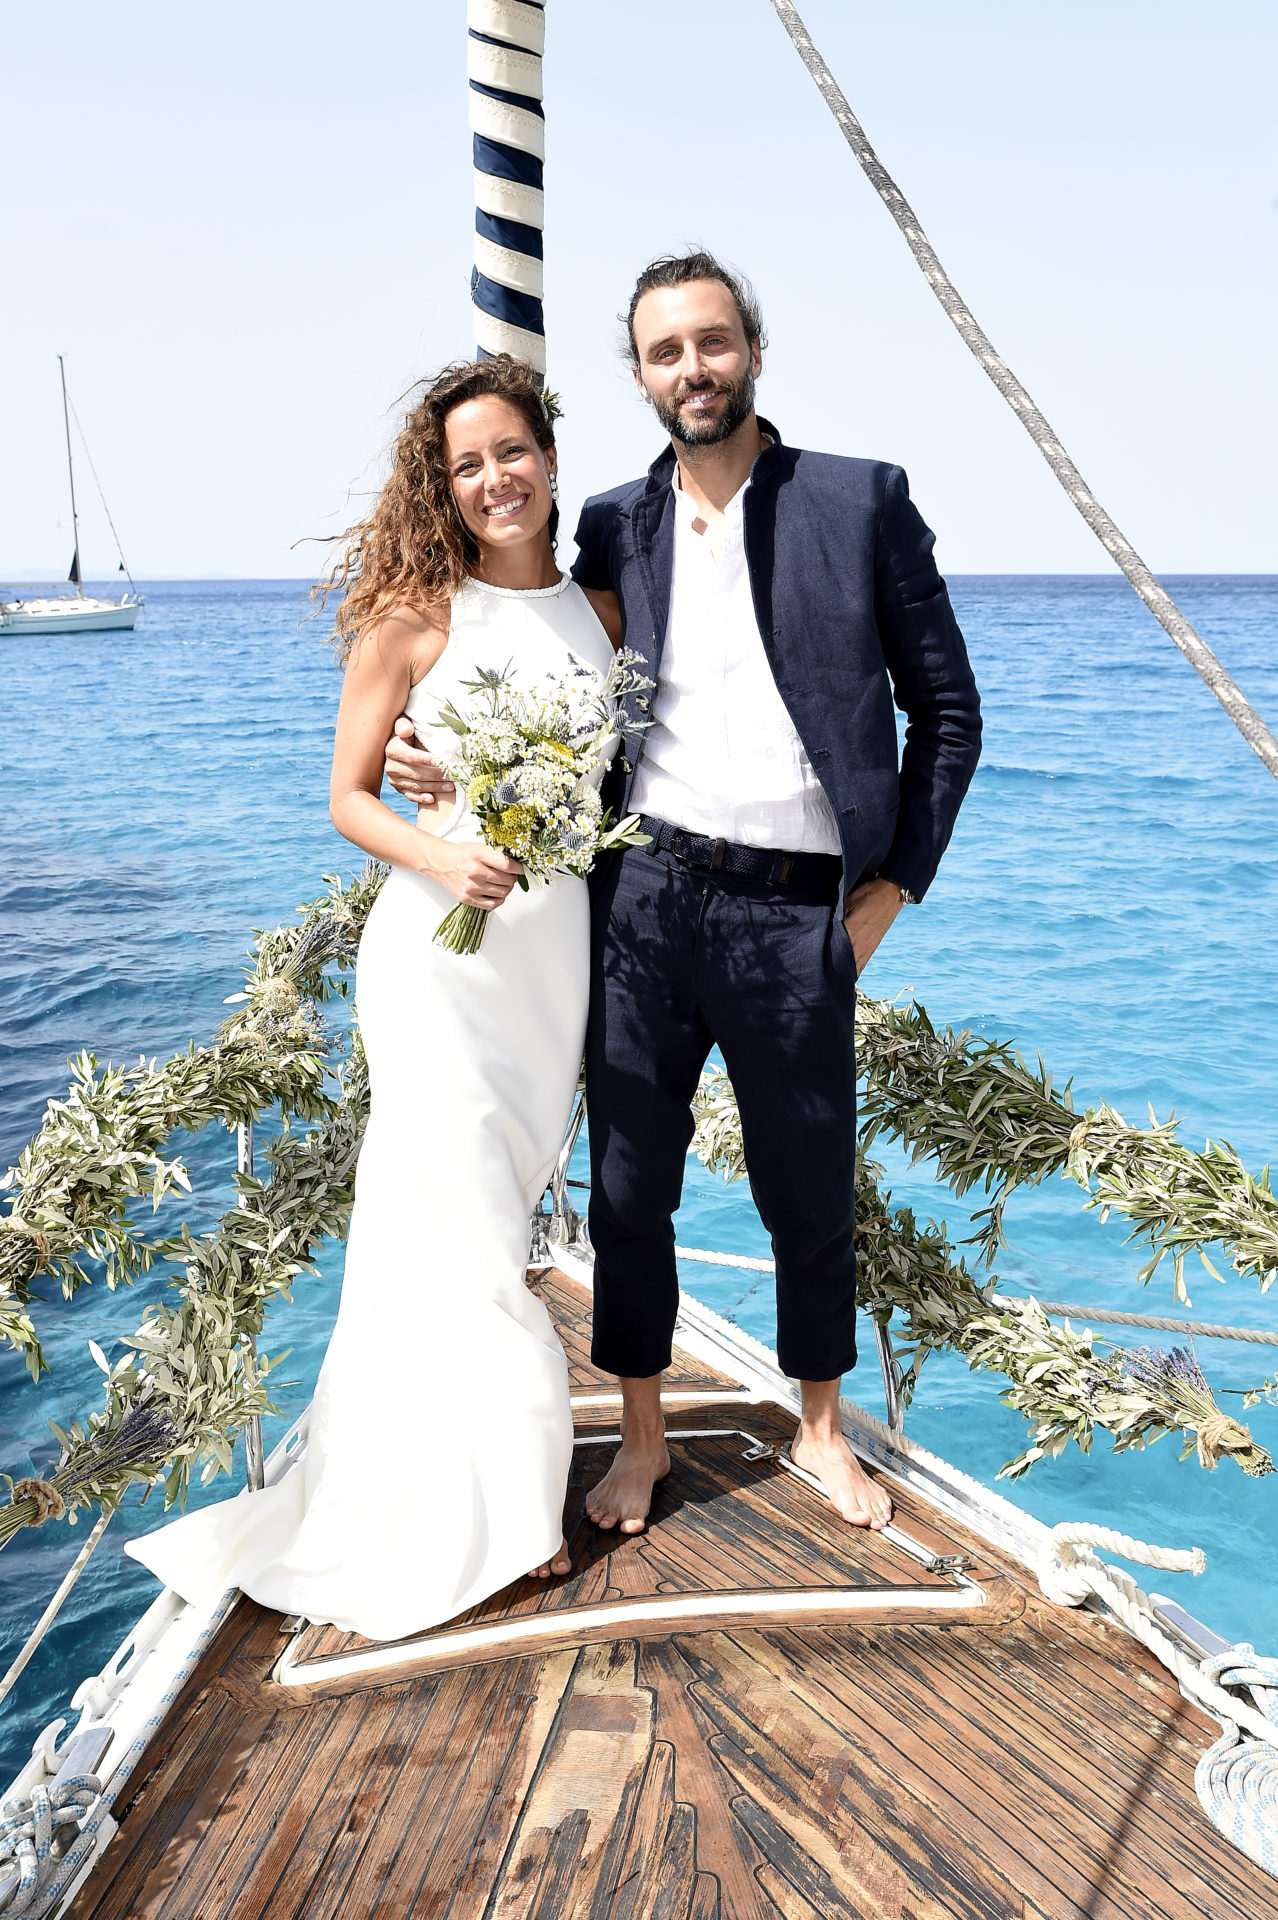 La boda mediterránea de Laura Madrueño YOLANCRIS